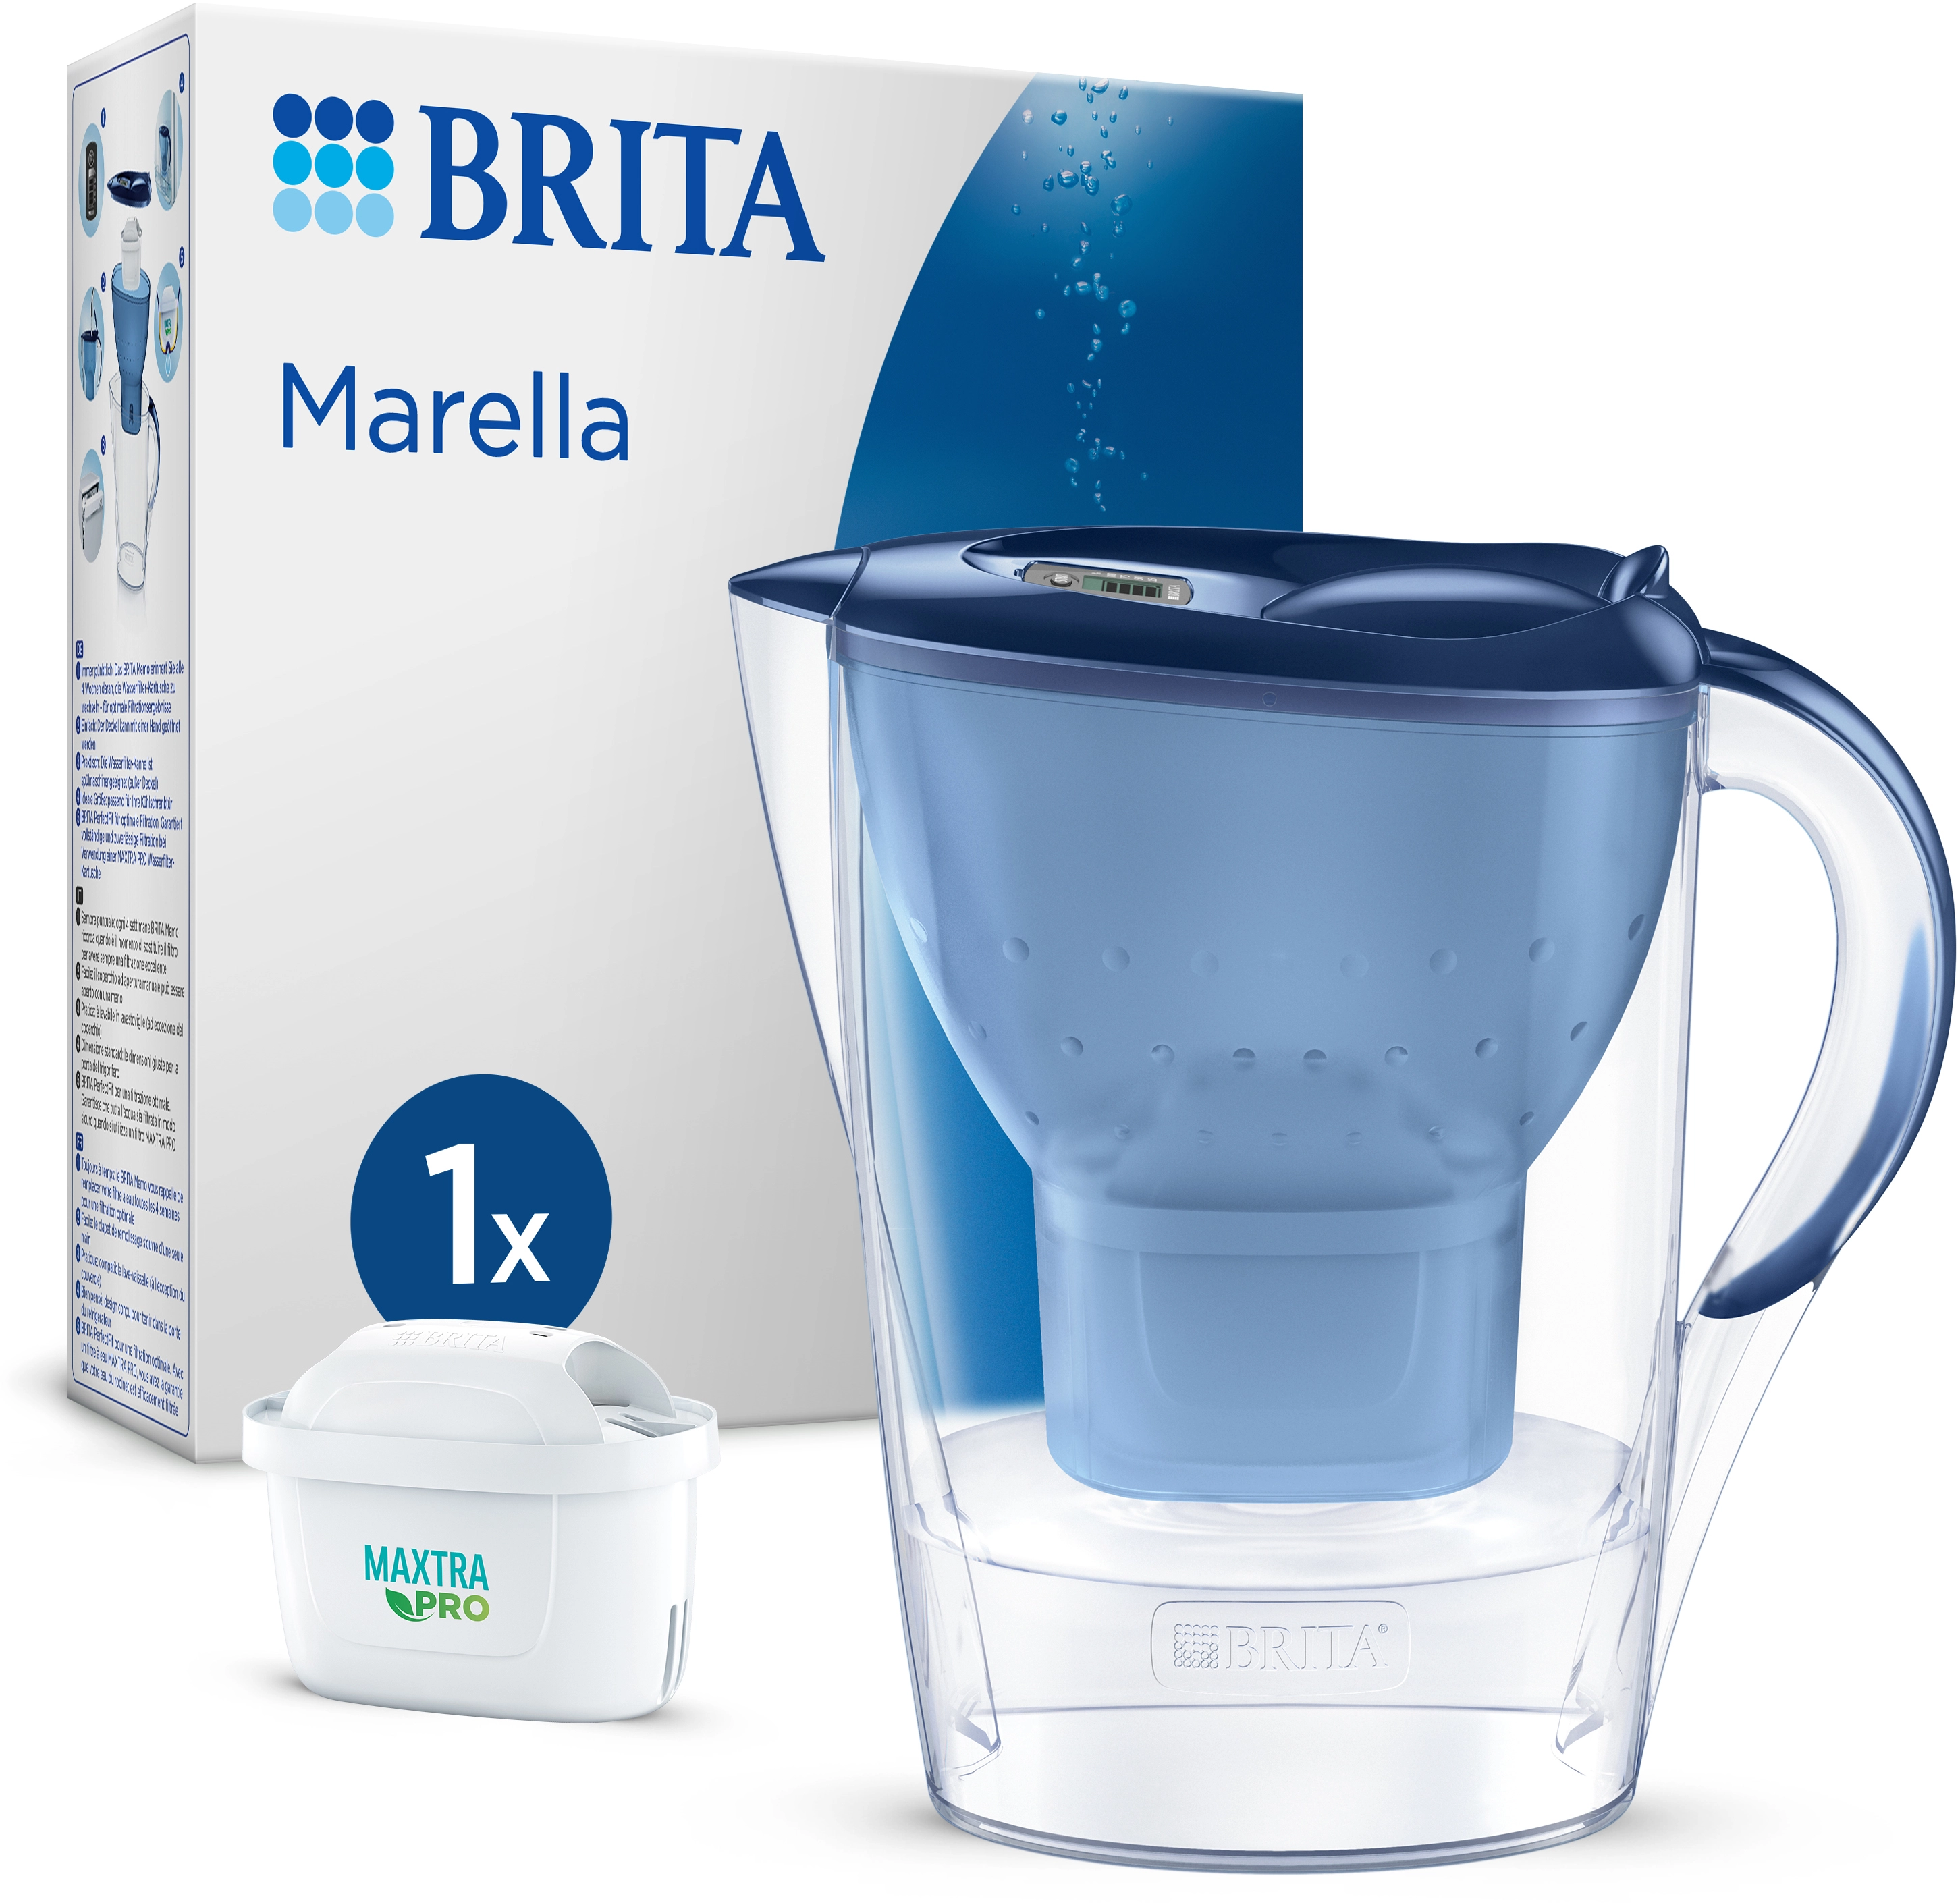 Pro Wasserfilter-Kanne Maxtra l bei Marella Brita kaufen Kartusche 2,4 Blau OBI inkl. All-in-1